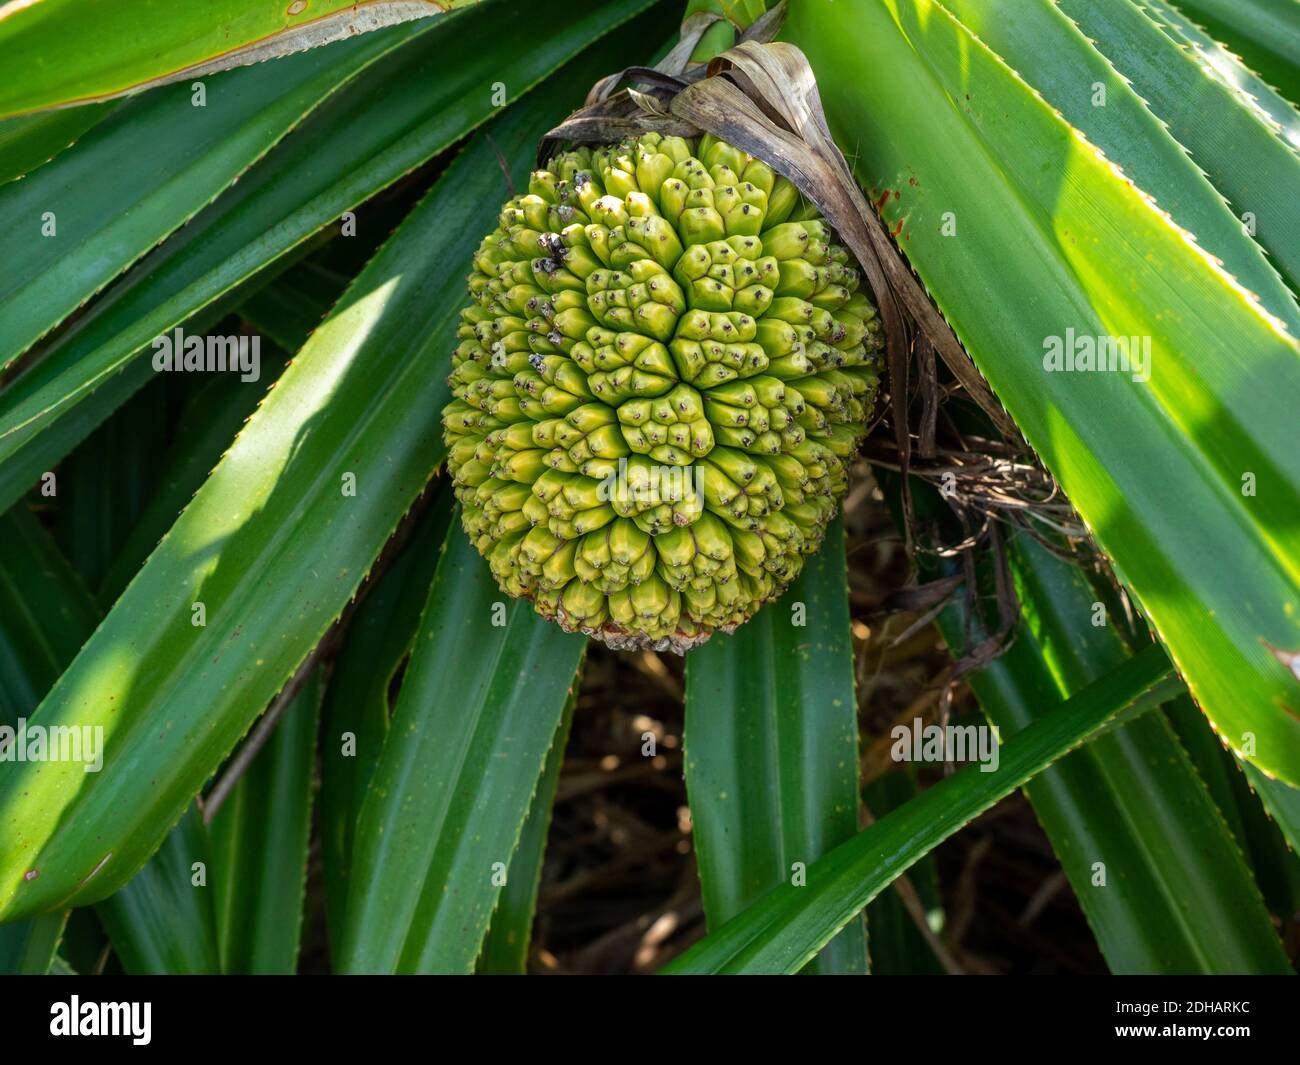 A selective focus shot of growing Screwpine fruit Stock Photo